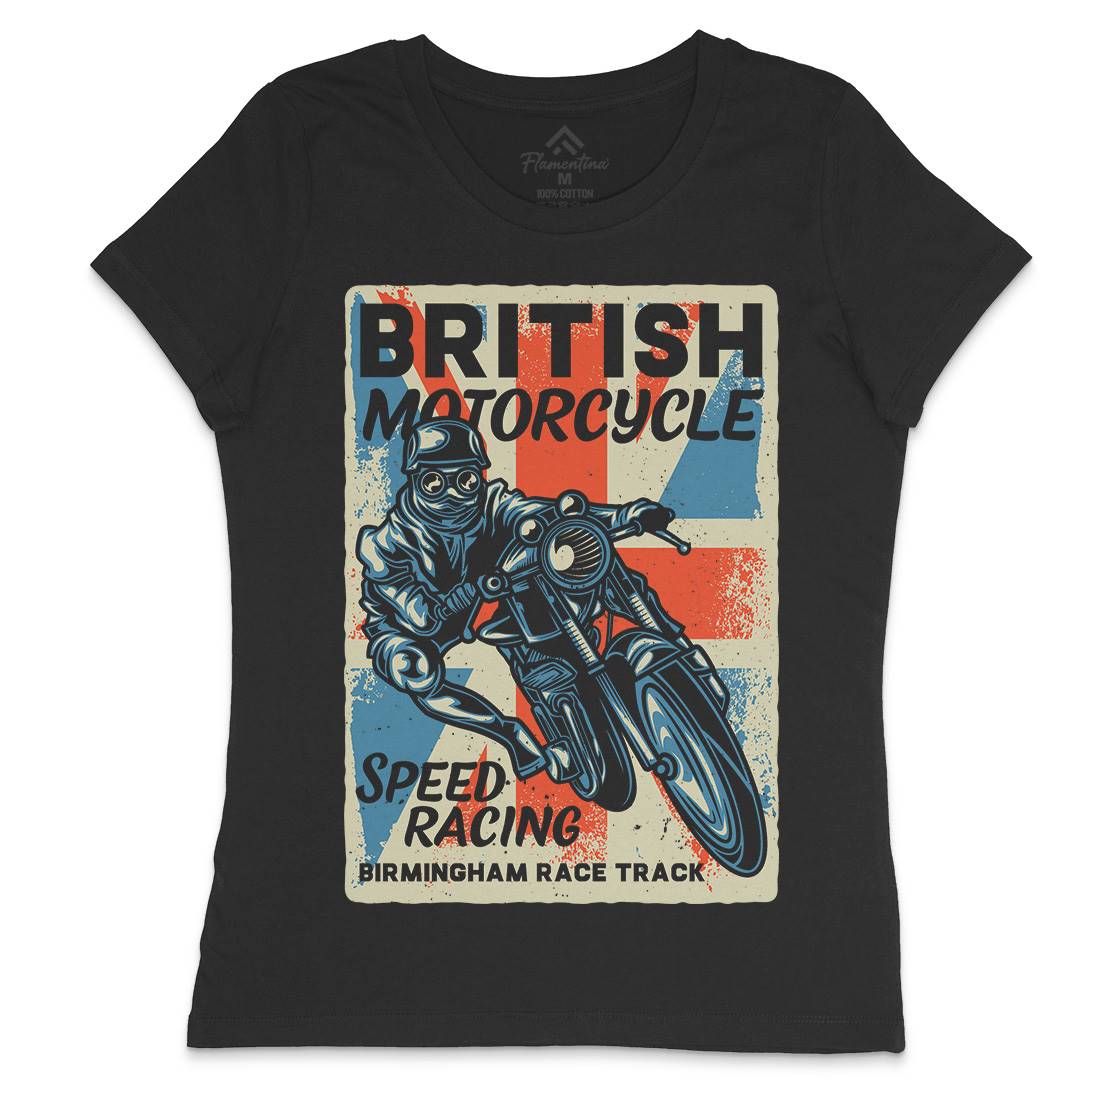 British Womens Crew Neck T-Shirt Motorcycles B140